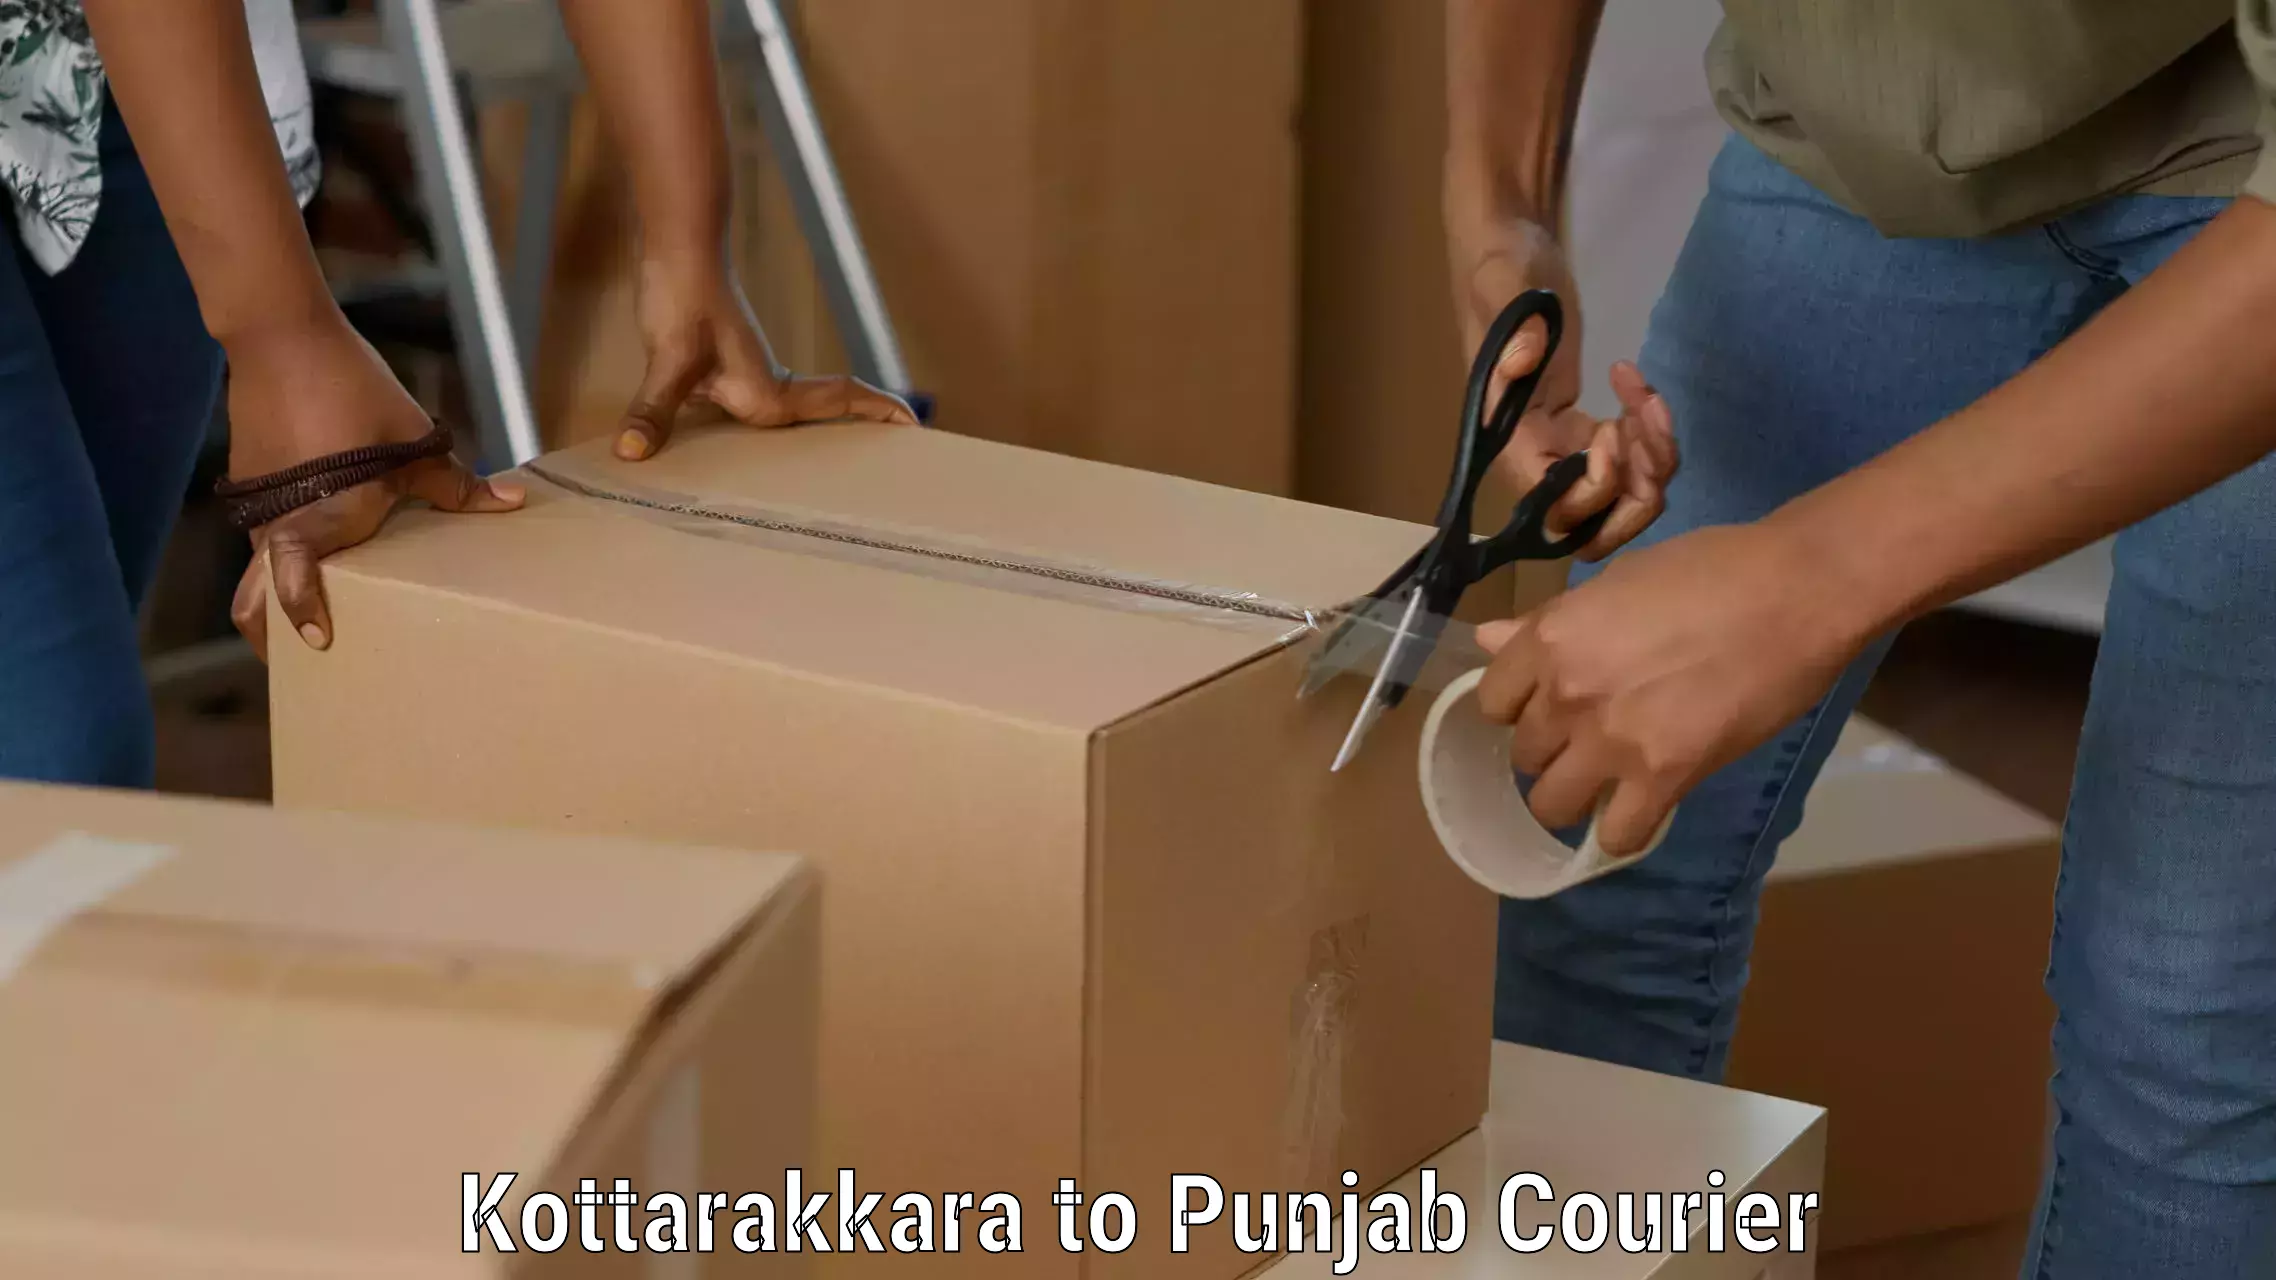 Global parcel delivery Kottarakkara to Mohali